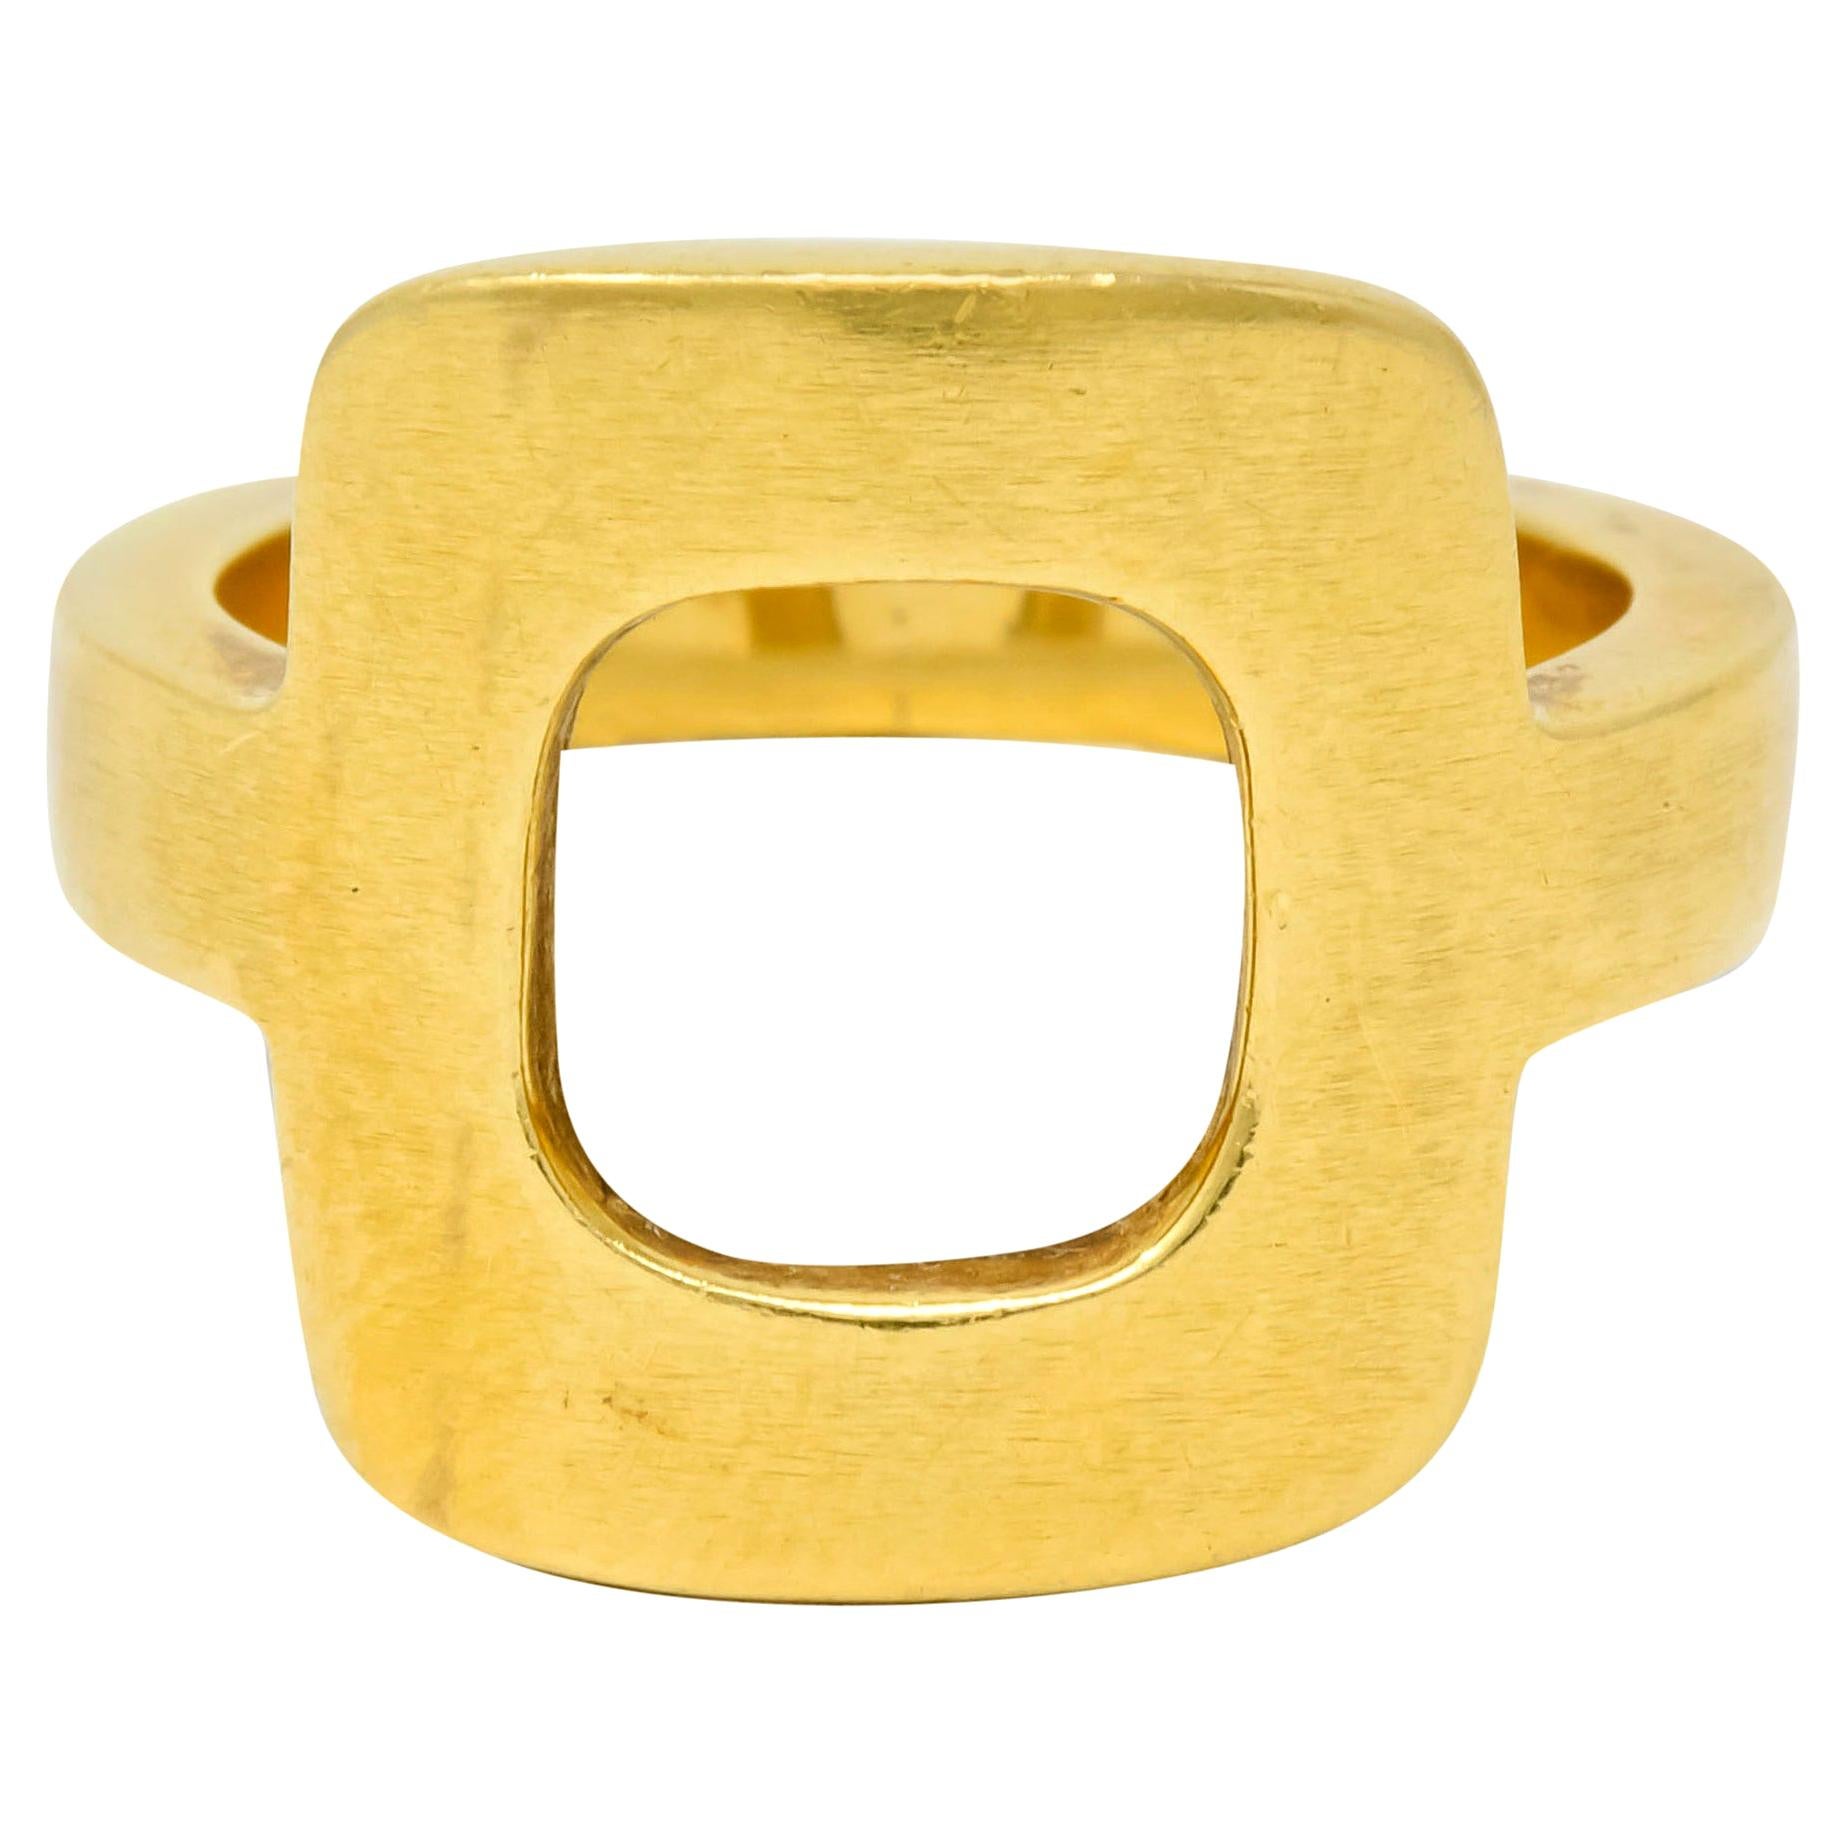 Dinh Van Cartier Modernist 18 Karat Yellow Gold Cushion Ring